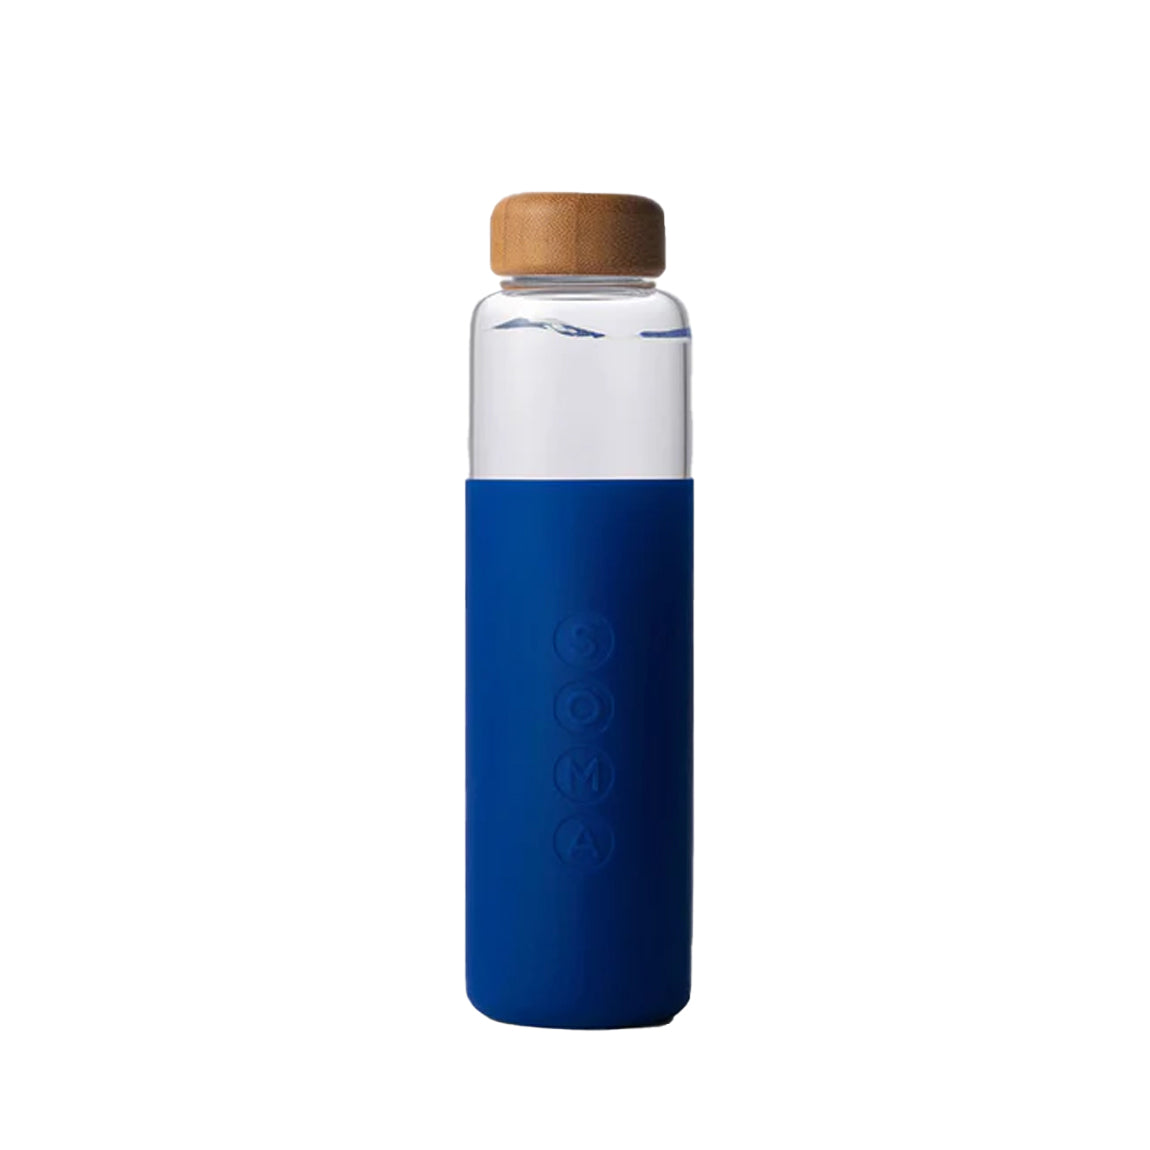 V2 17 oz. Glass Water Bottle